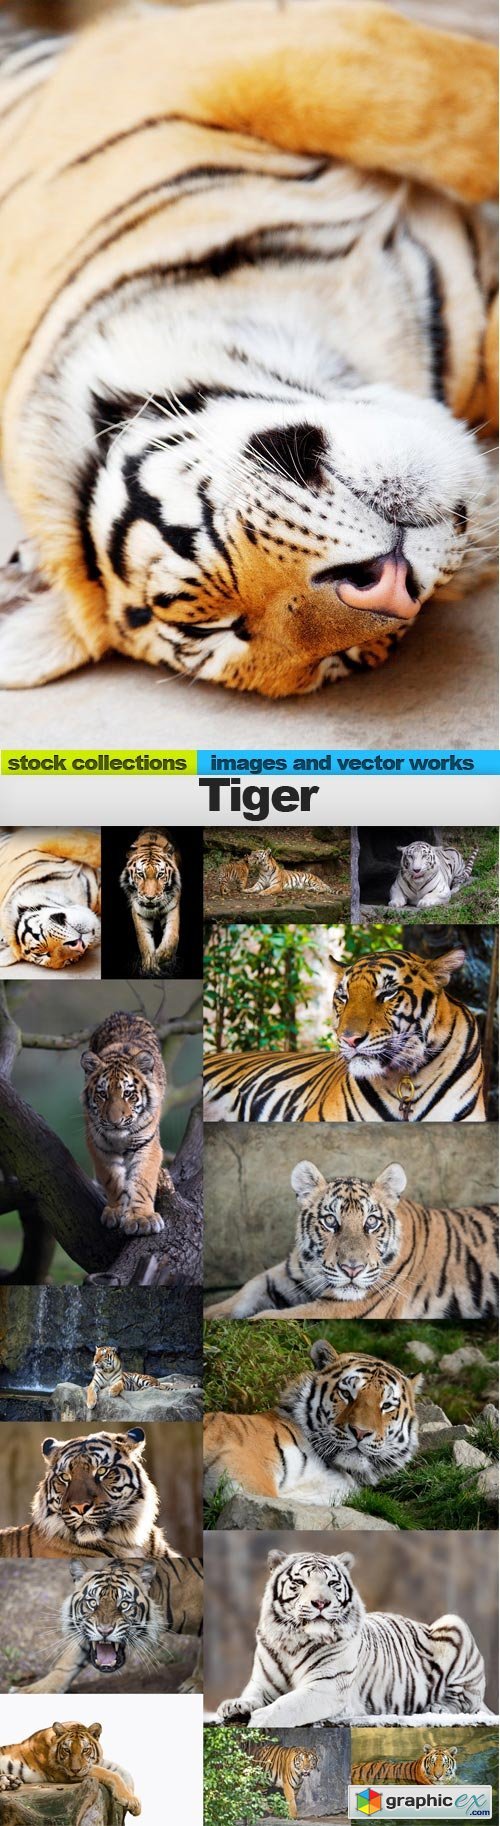 Tiger 2, 15 x UHQ JPEG